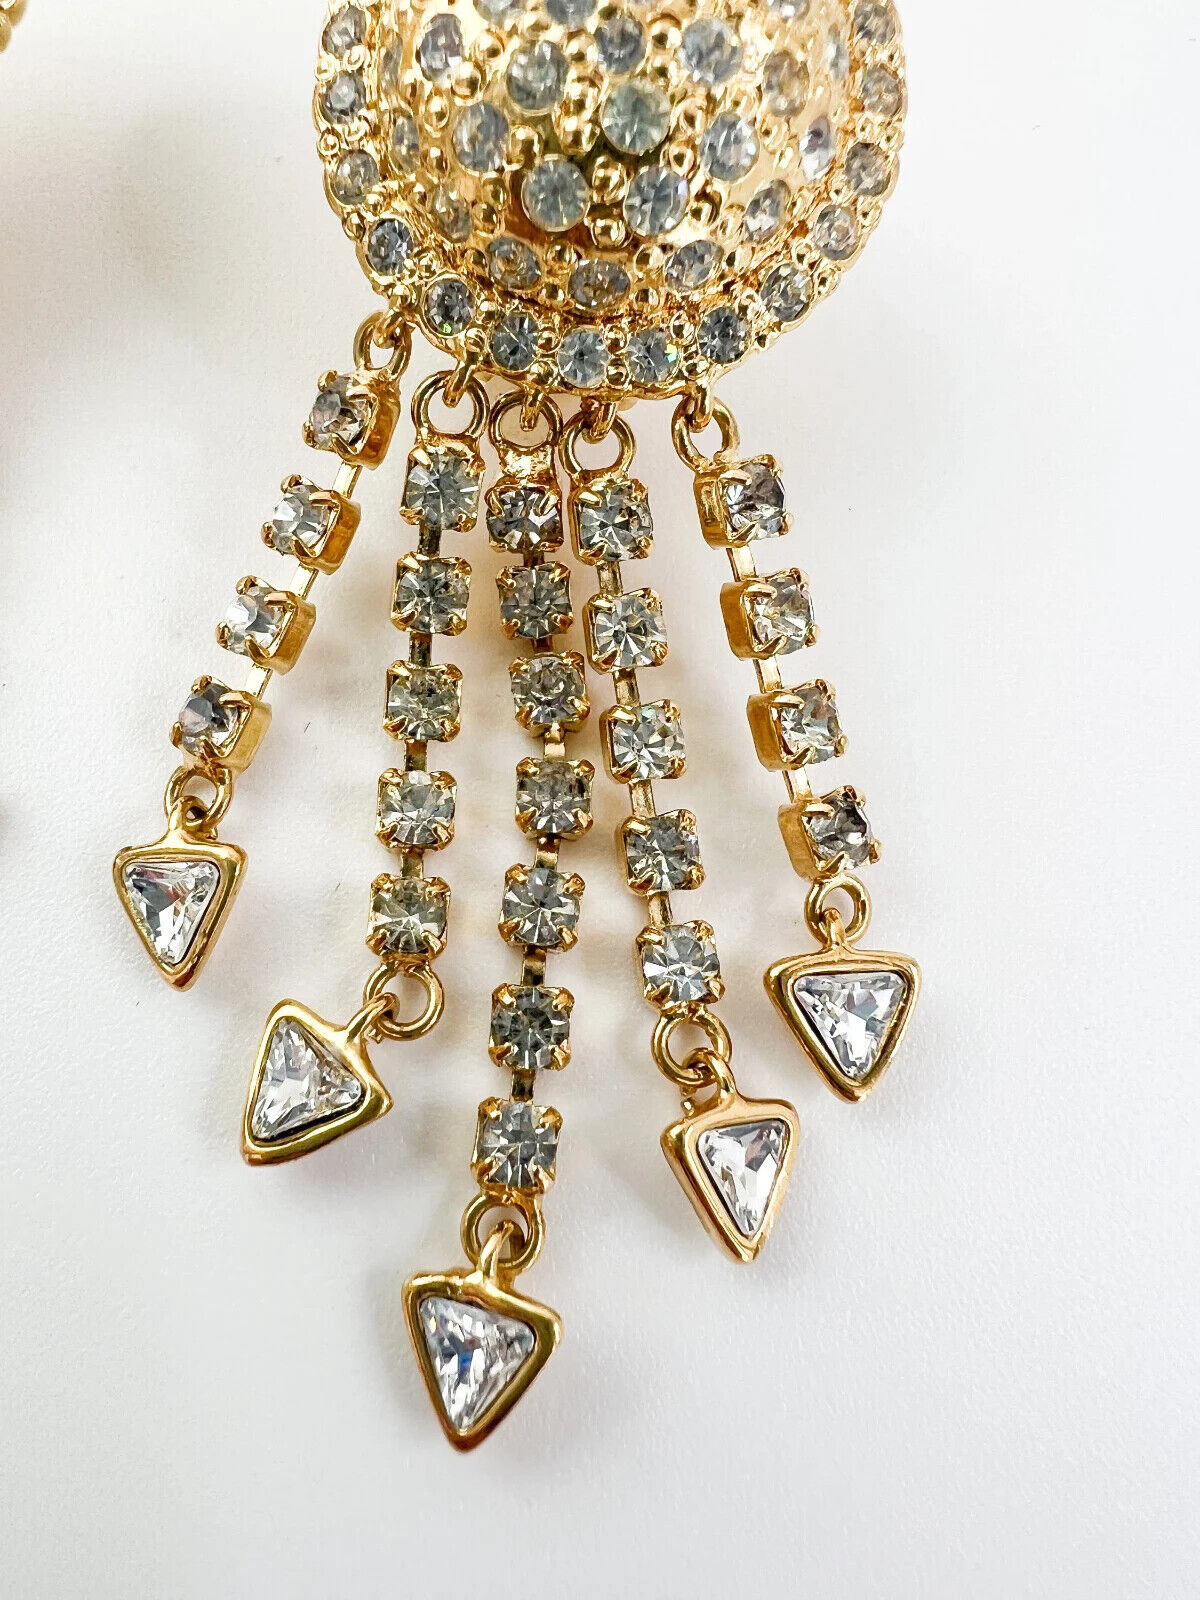 Vintage VERSACE Earrings, Jellyfish Earrings Gianni Versace Vintage Earrings, Dangle Earrings Gold, Drop Earrings, Bridal Earrings Gift